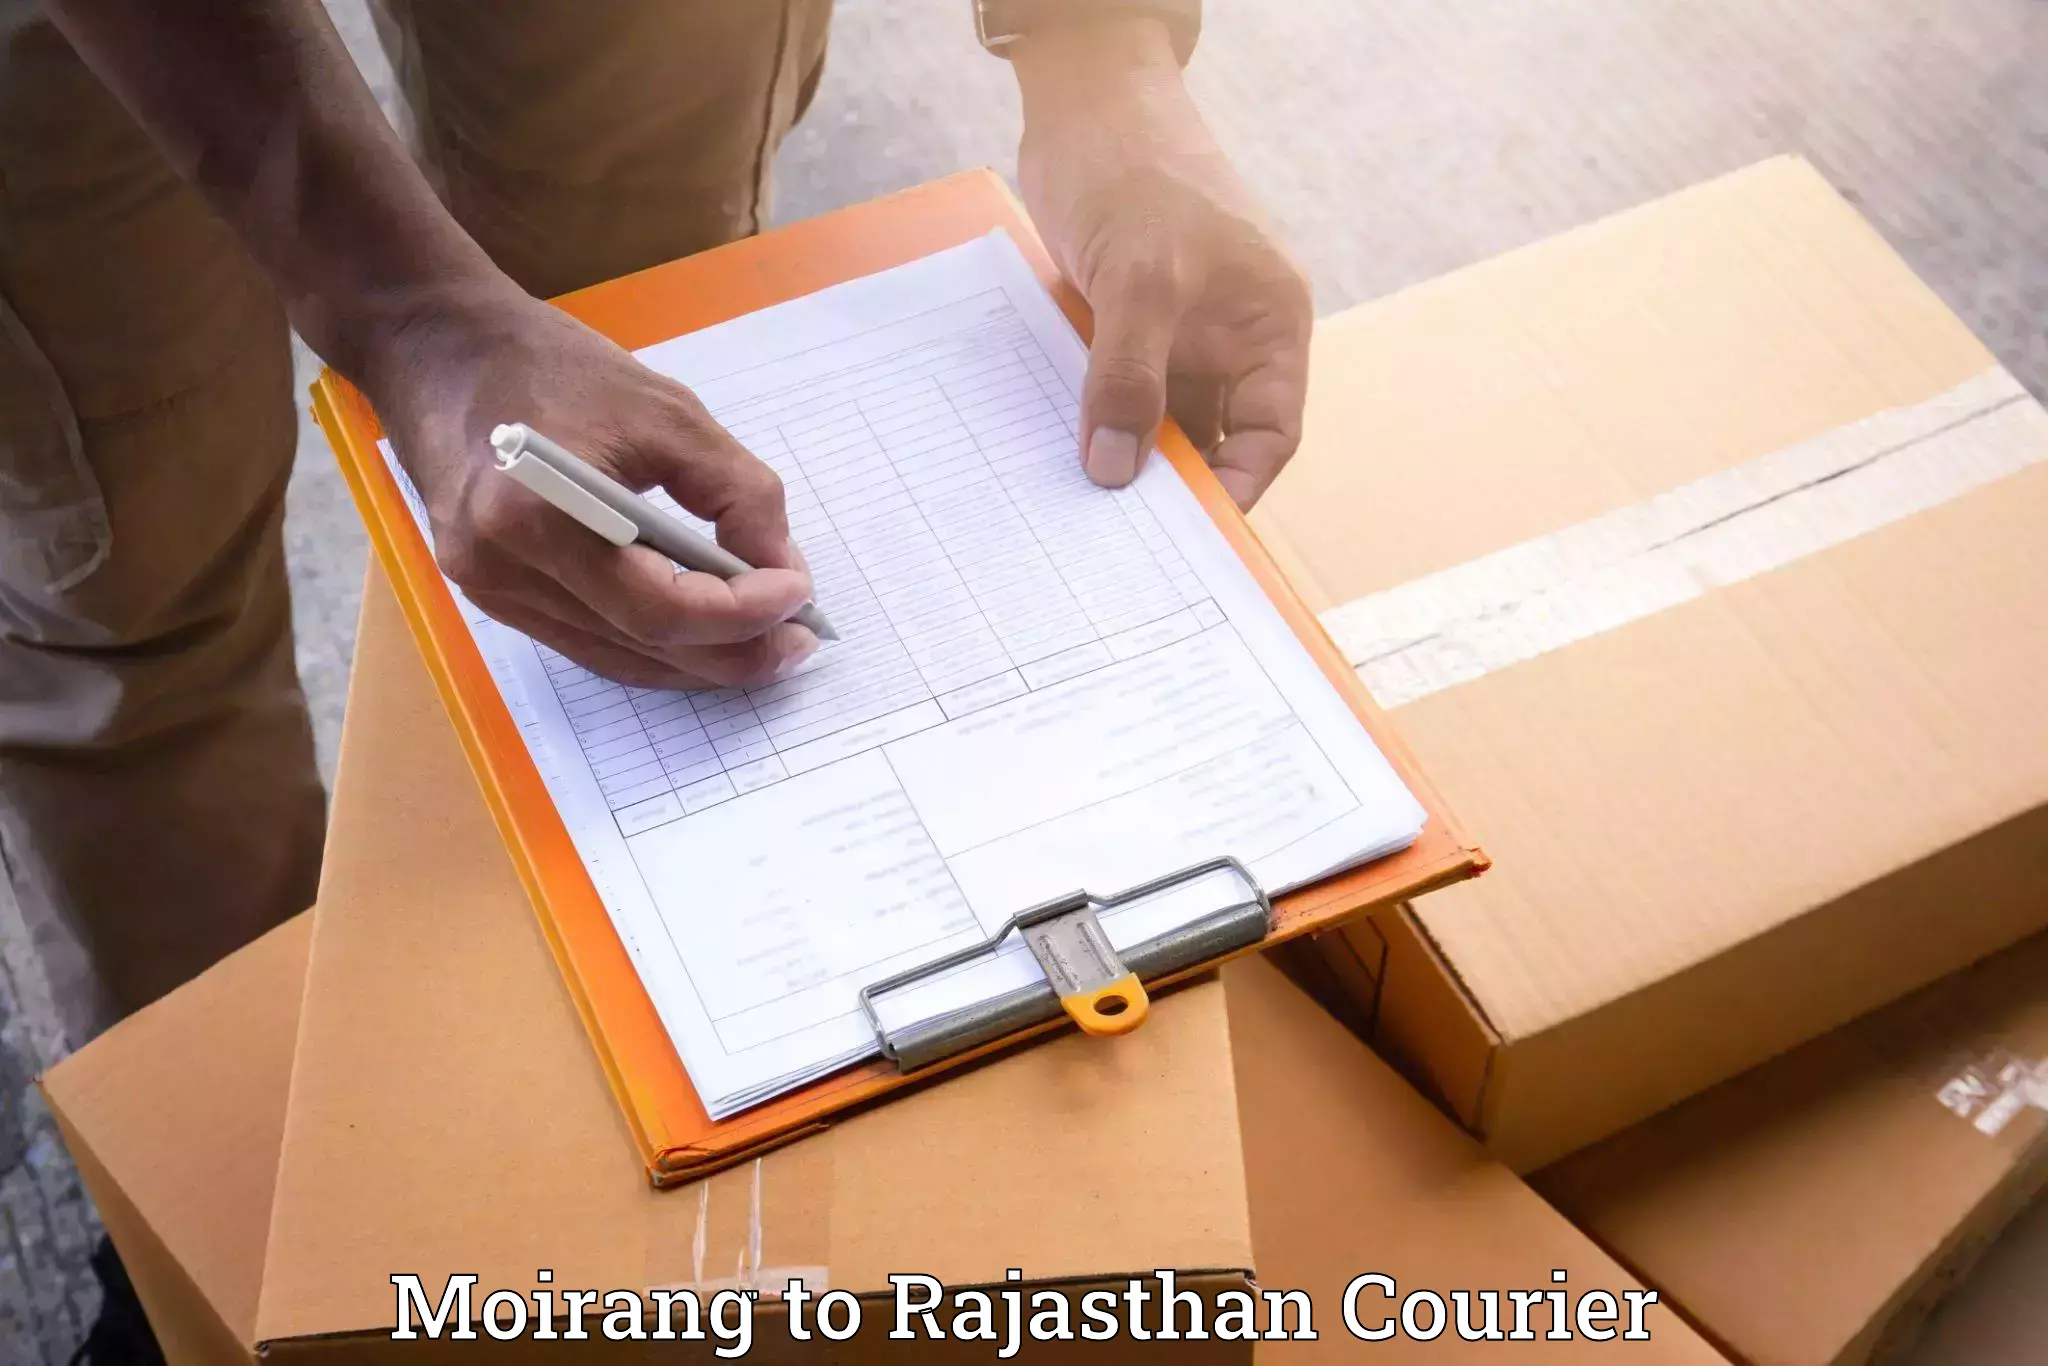 Furniture transport and logistics Moirang to Yathalakunta